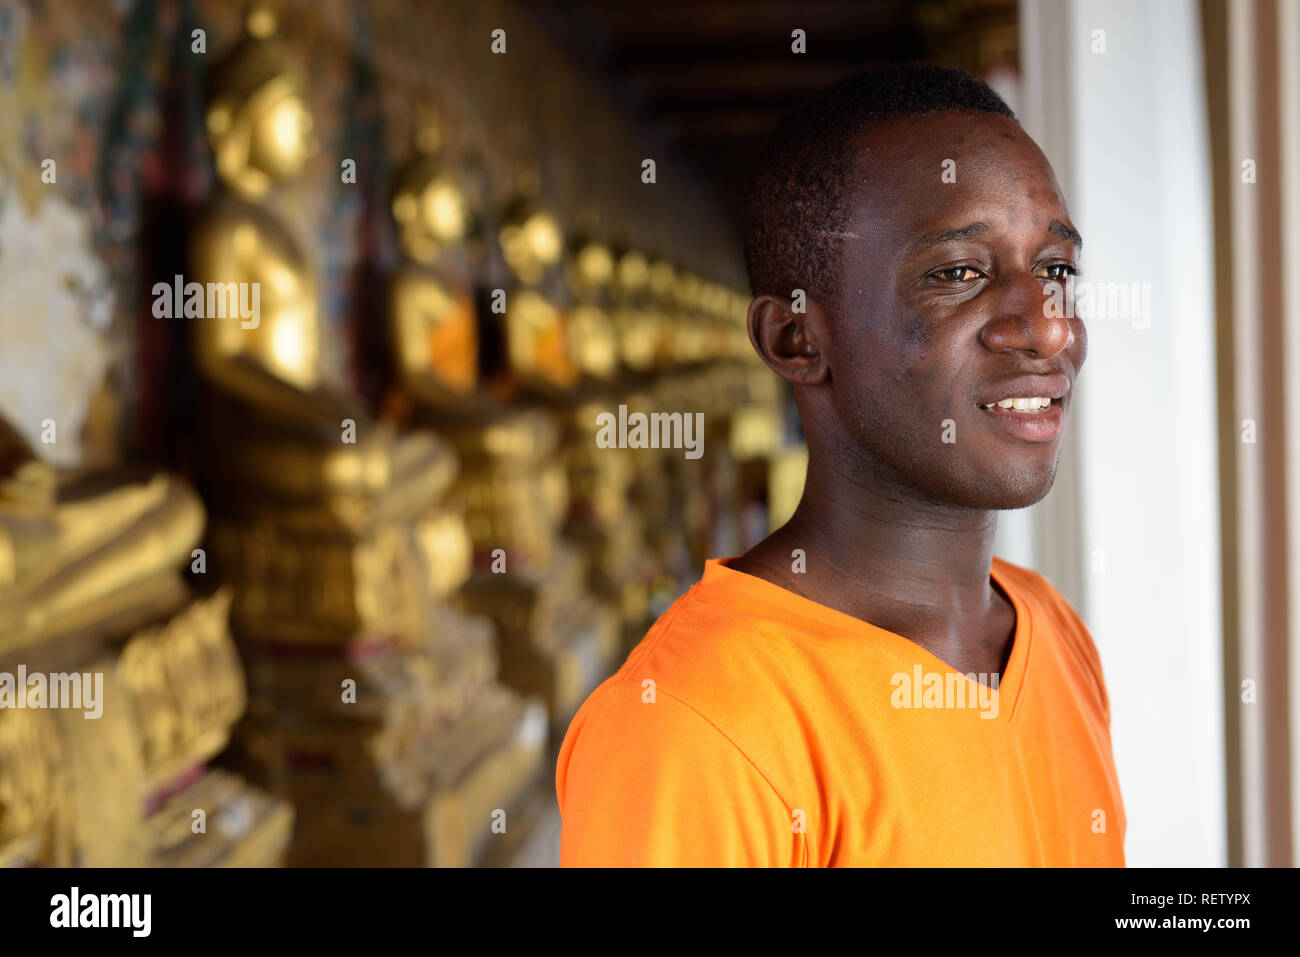 Les jeunes professionnels African man smiling at temple bouddhiste Banque D'Images